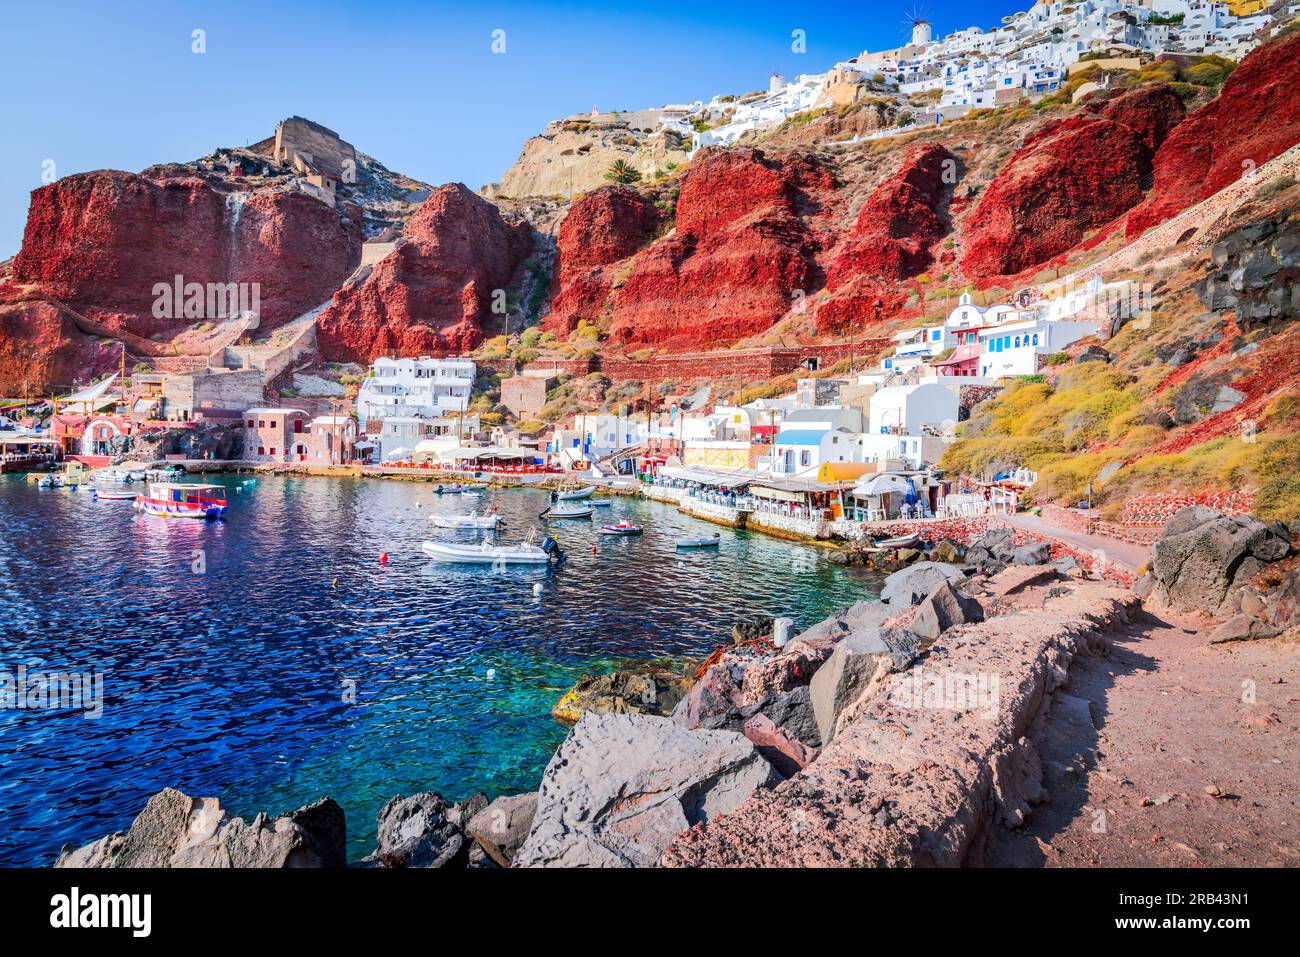 Santorin, Griechenland. Charmanter kleiner Hafen von Ammoudi am Fuße des malerischen Dorfes Oia, ein beliebtes Touristenziel auf den griechischen Inseln und dem Ägäischen Meer. Stockfoto